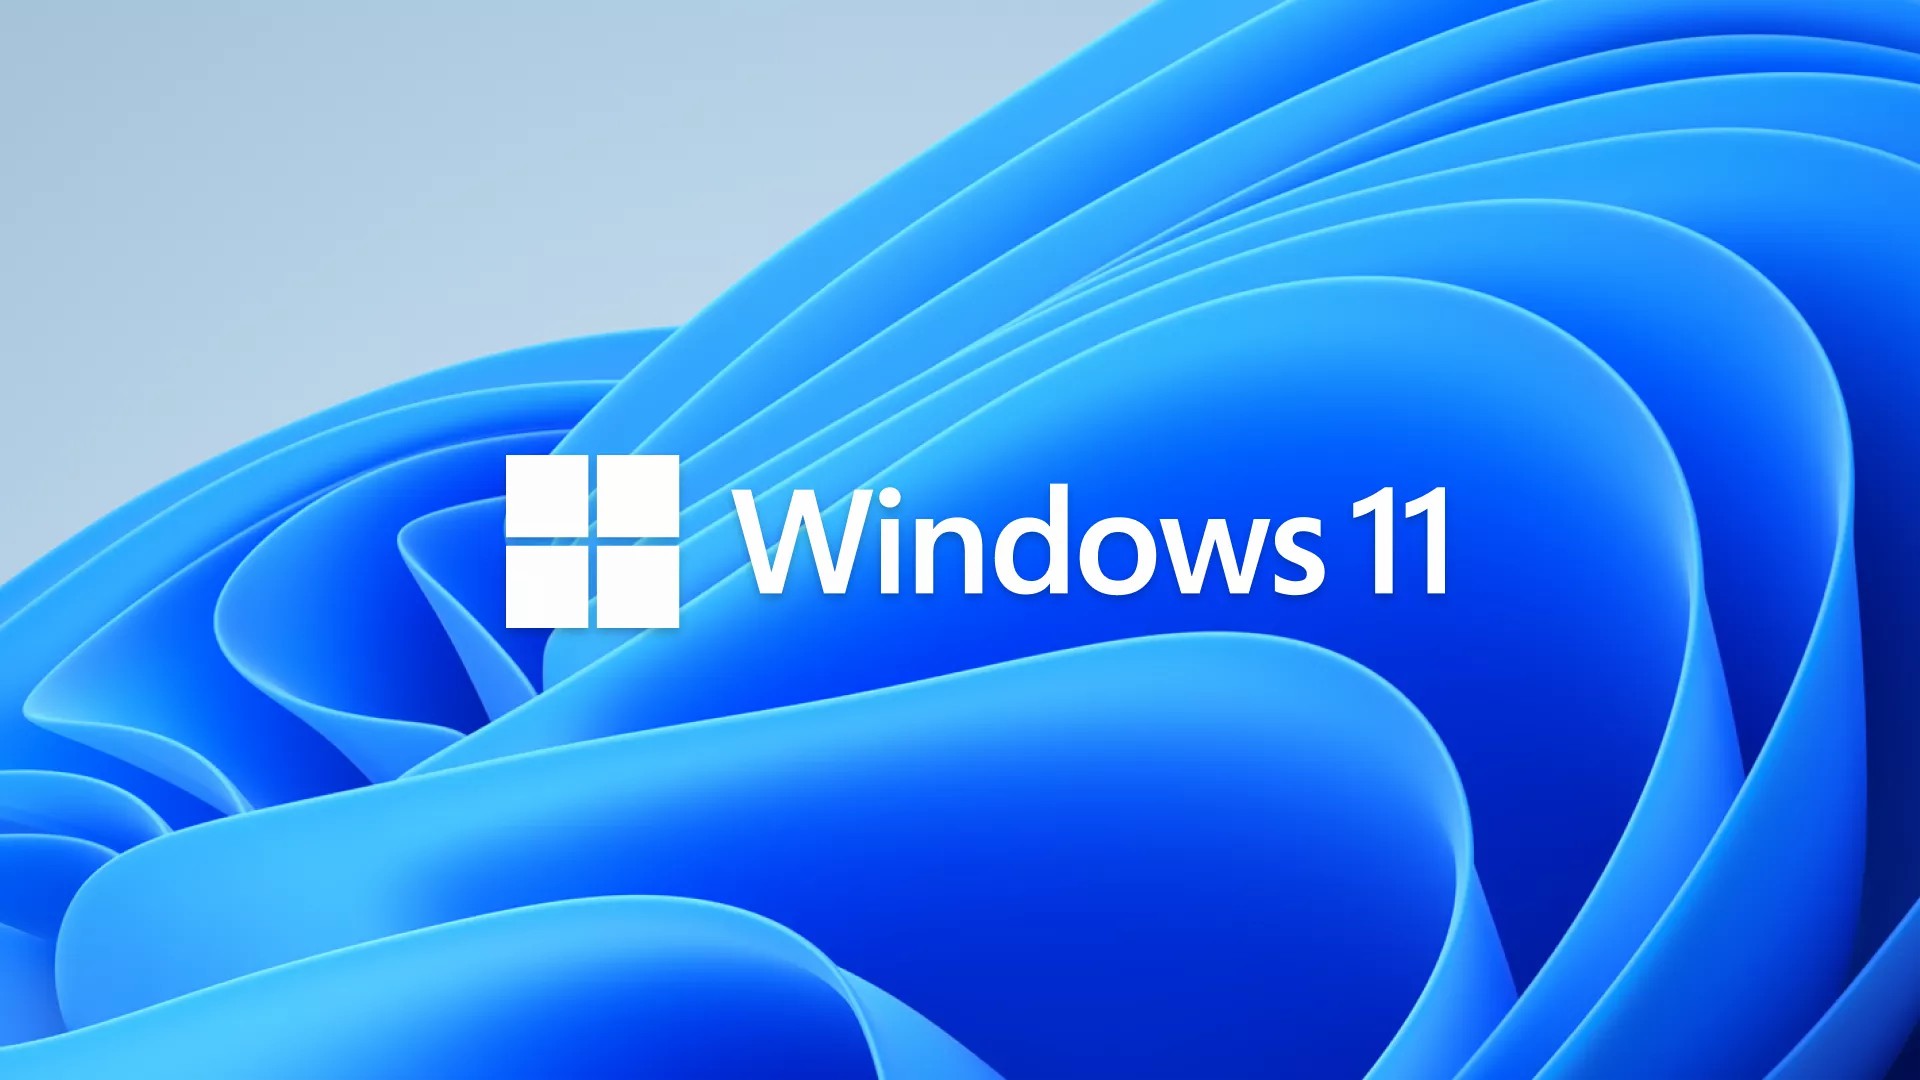 เช็คให้ชัวร์ก่อนติดตั้ง !! สเปกคอมขั้นต่ำของ Windows 11